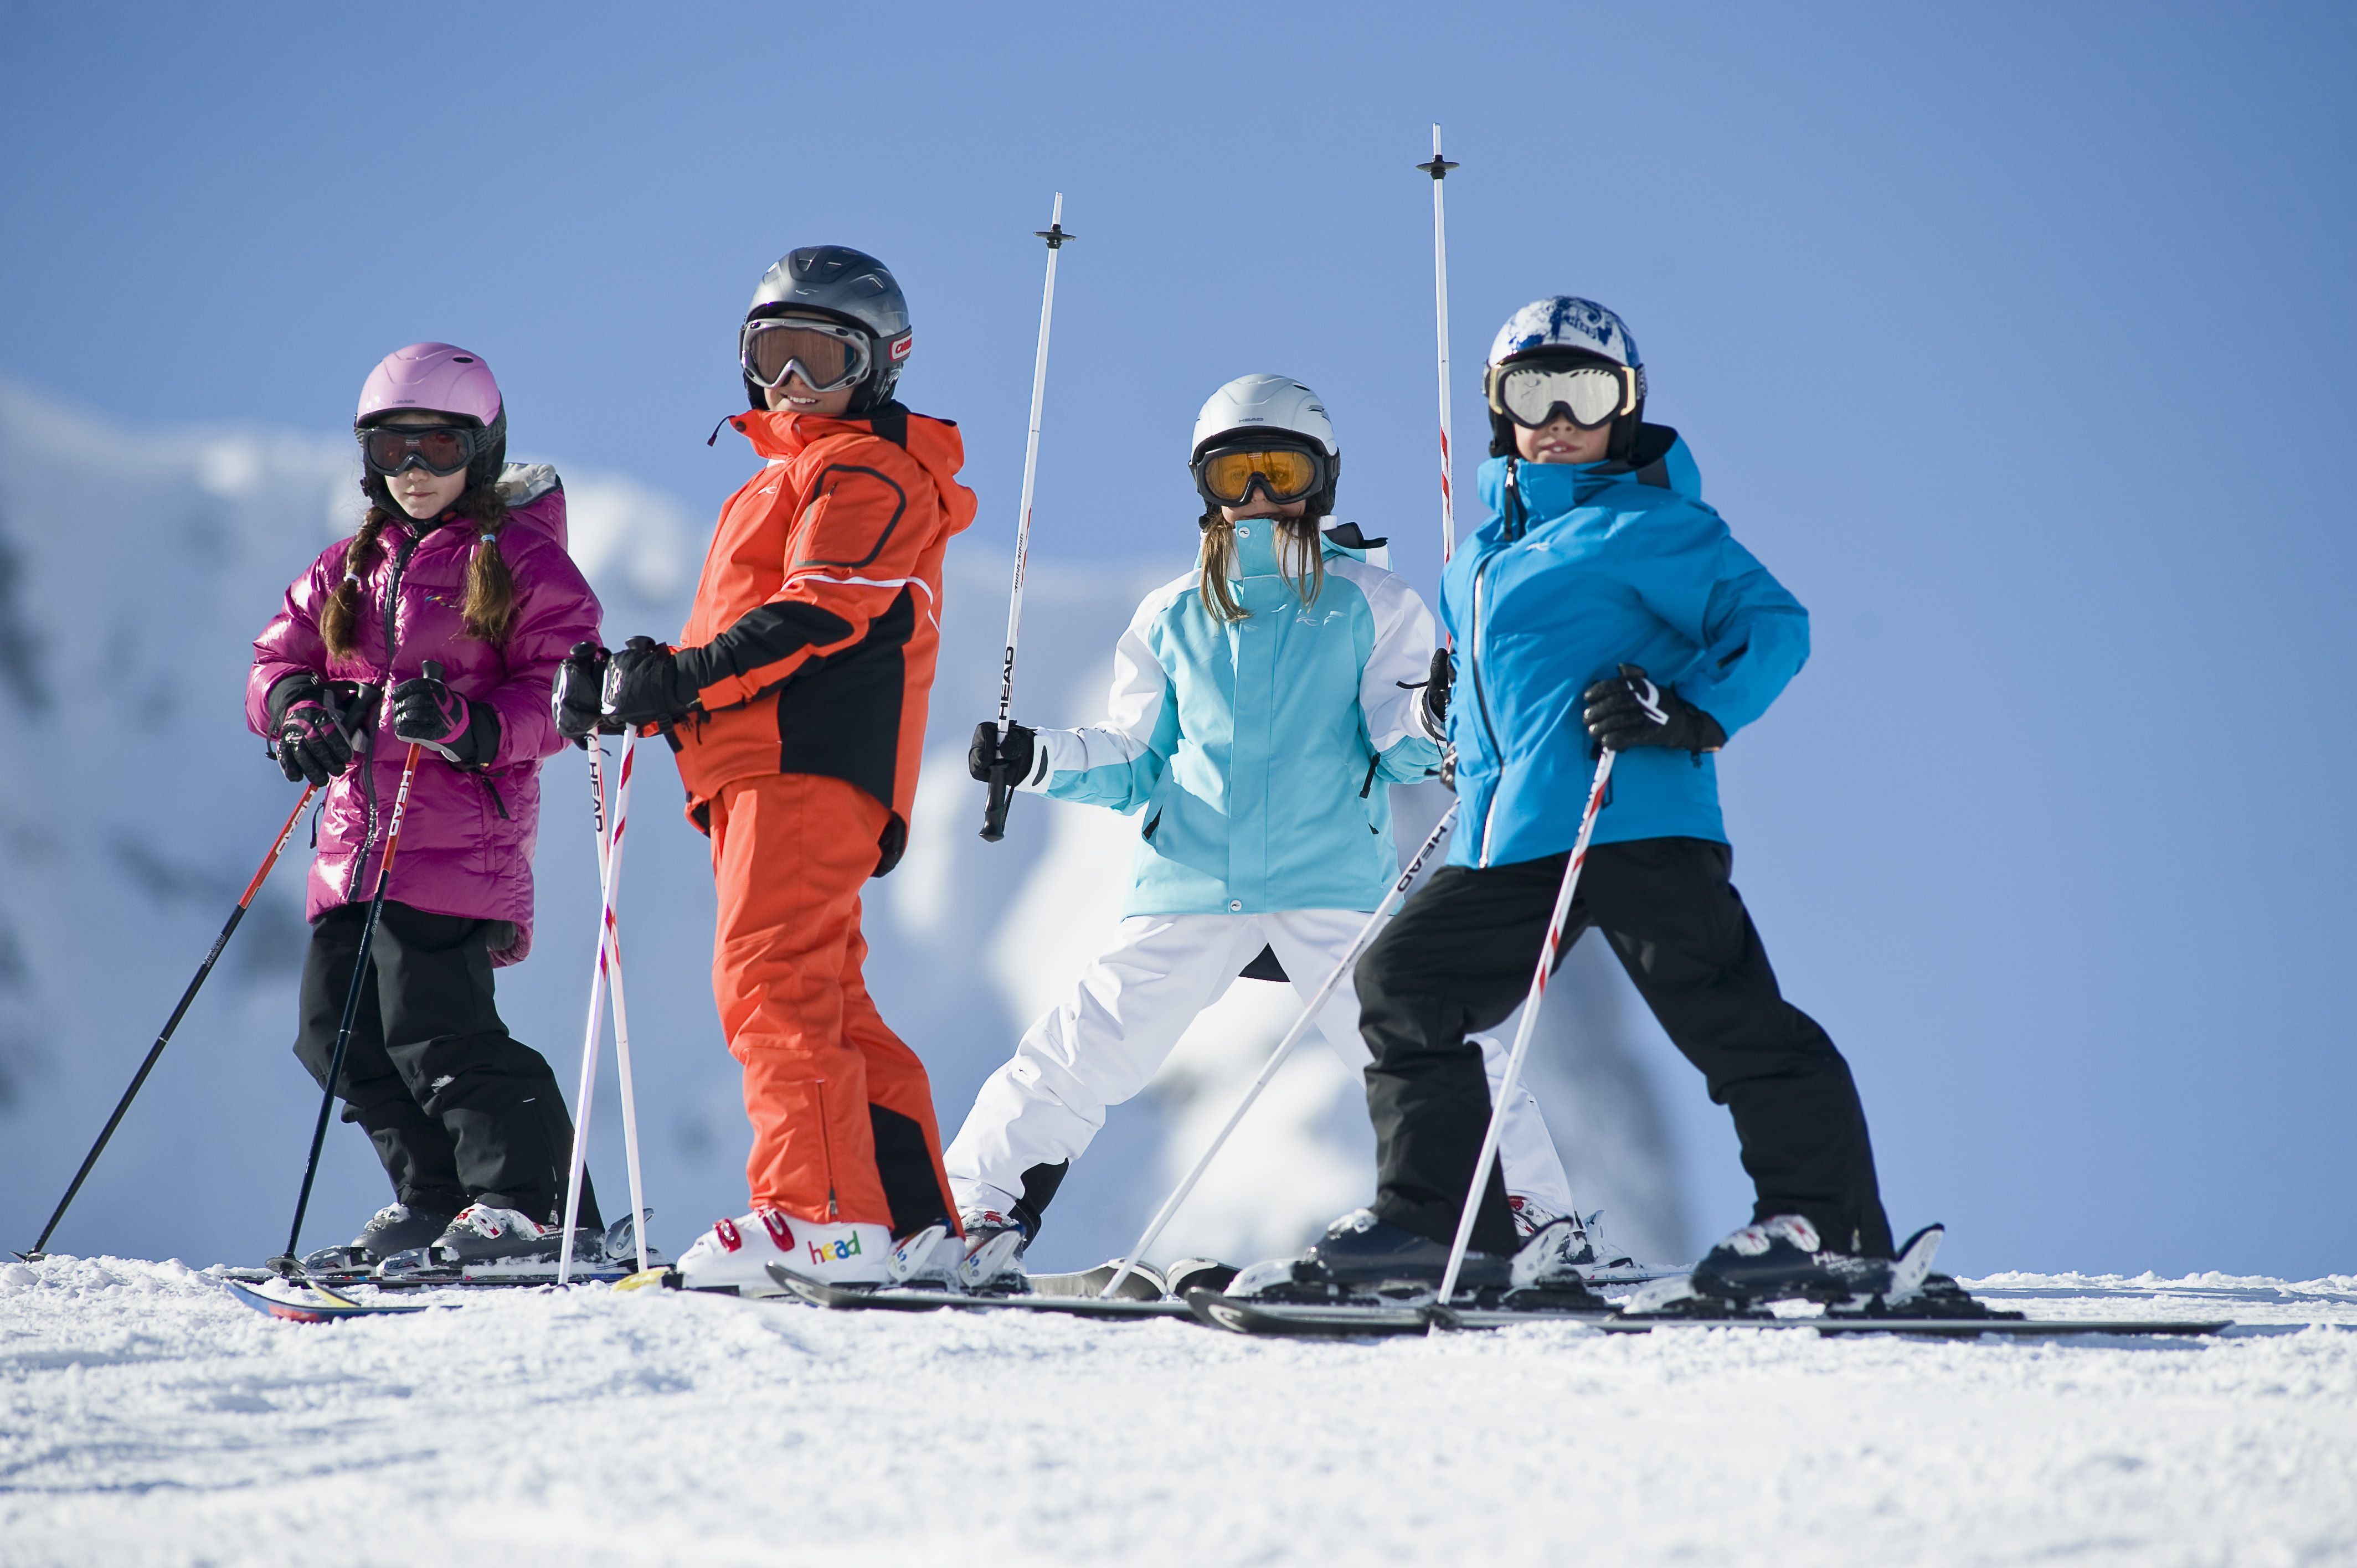 Маленькие лыжники. Лыжный спорт дети. Дети горнолыжники. Горнолыжный спорт дети. Катание на лыжах.